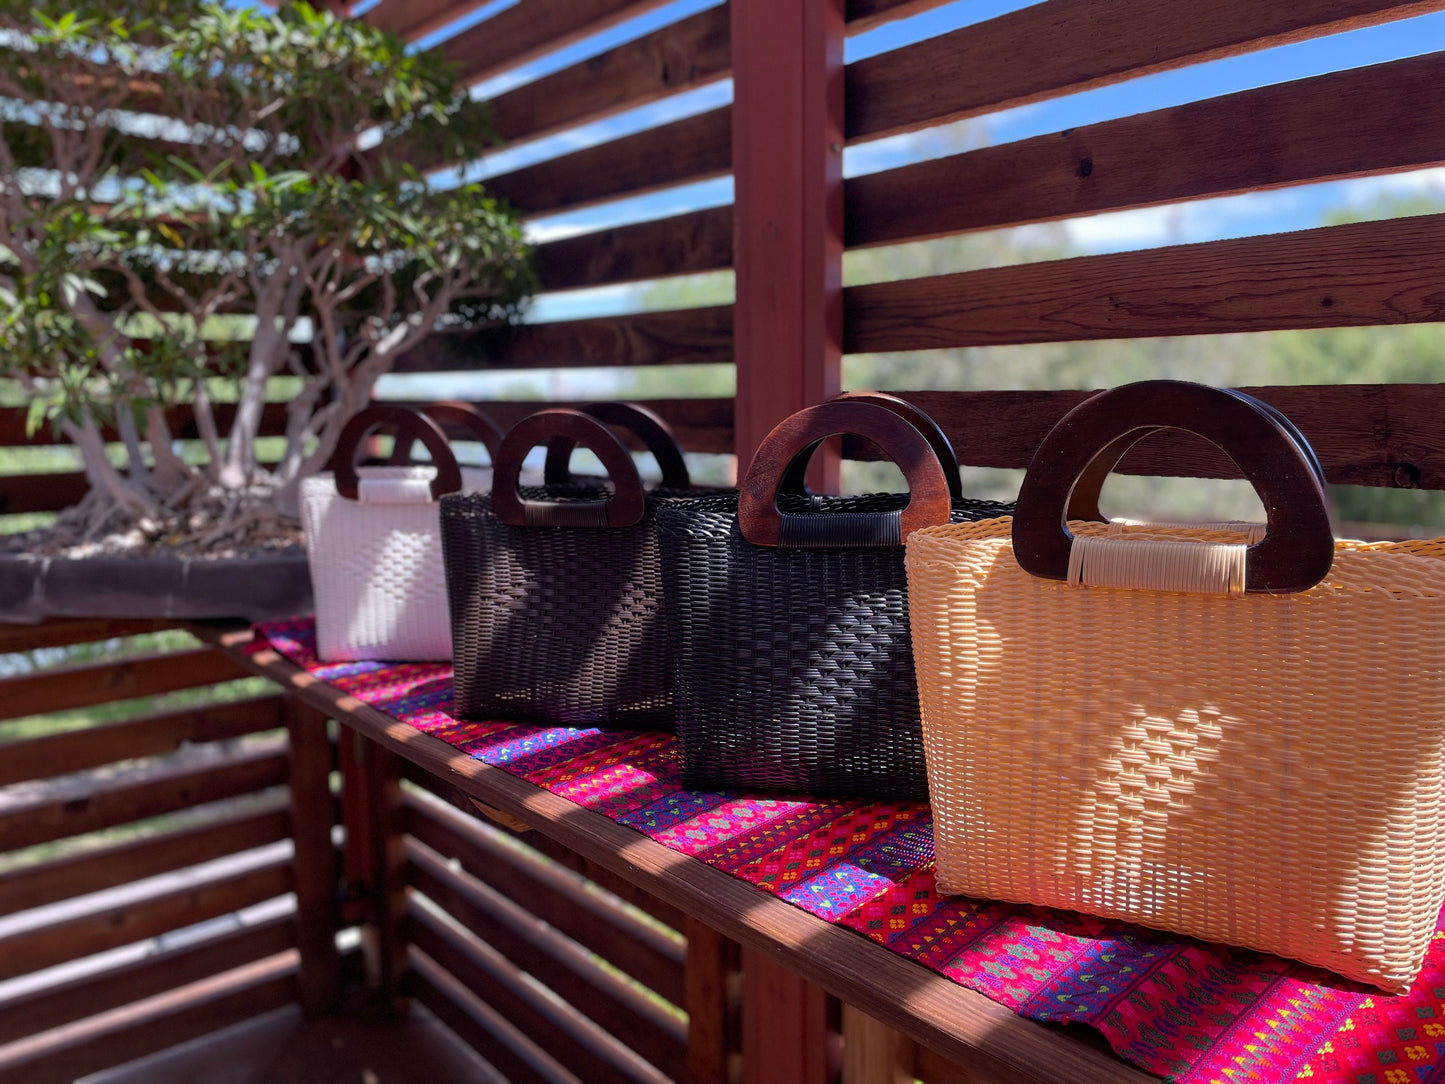 Guatemalan Handwoven Medium Tote Bag, Recycled Plastic Bags